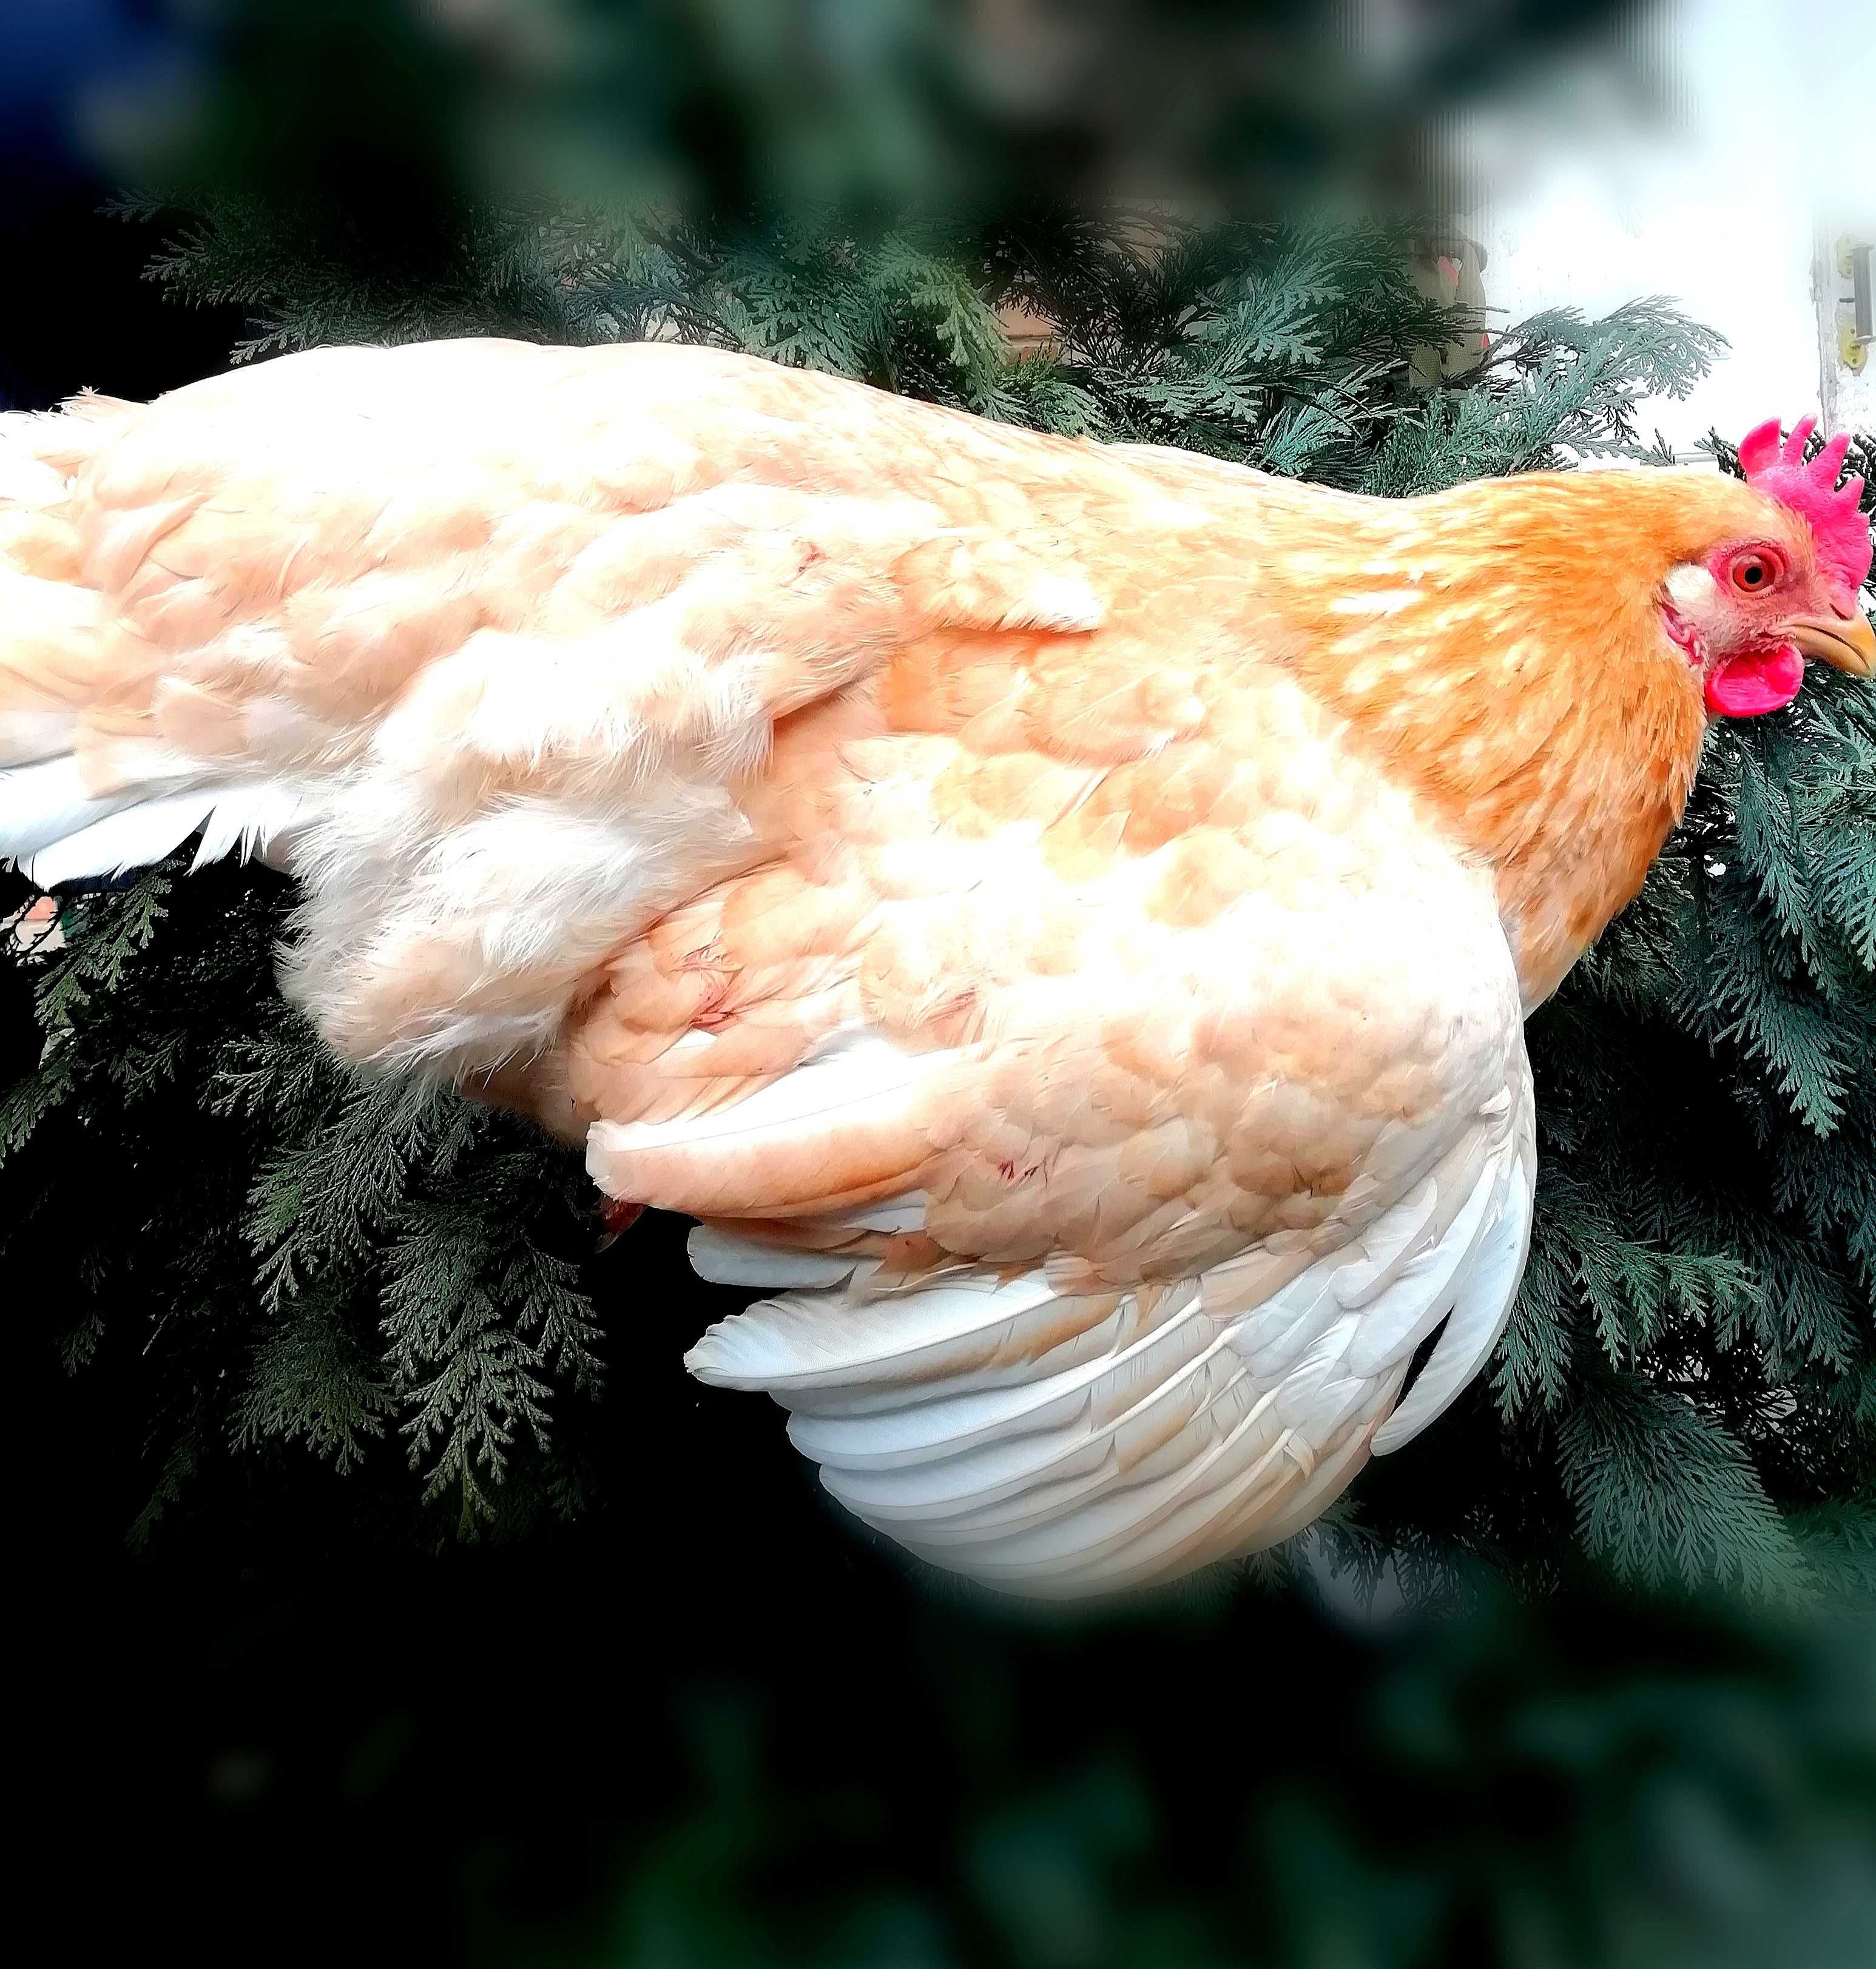 Кури міні-м'ясні палеві(мини-мясные). Інкубаційне яйце,курчата.